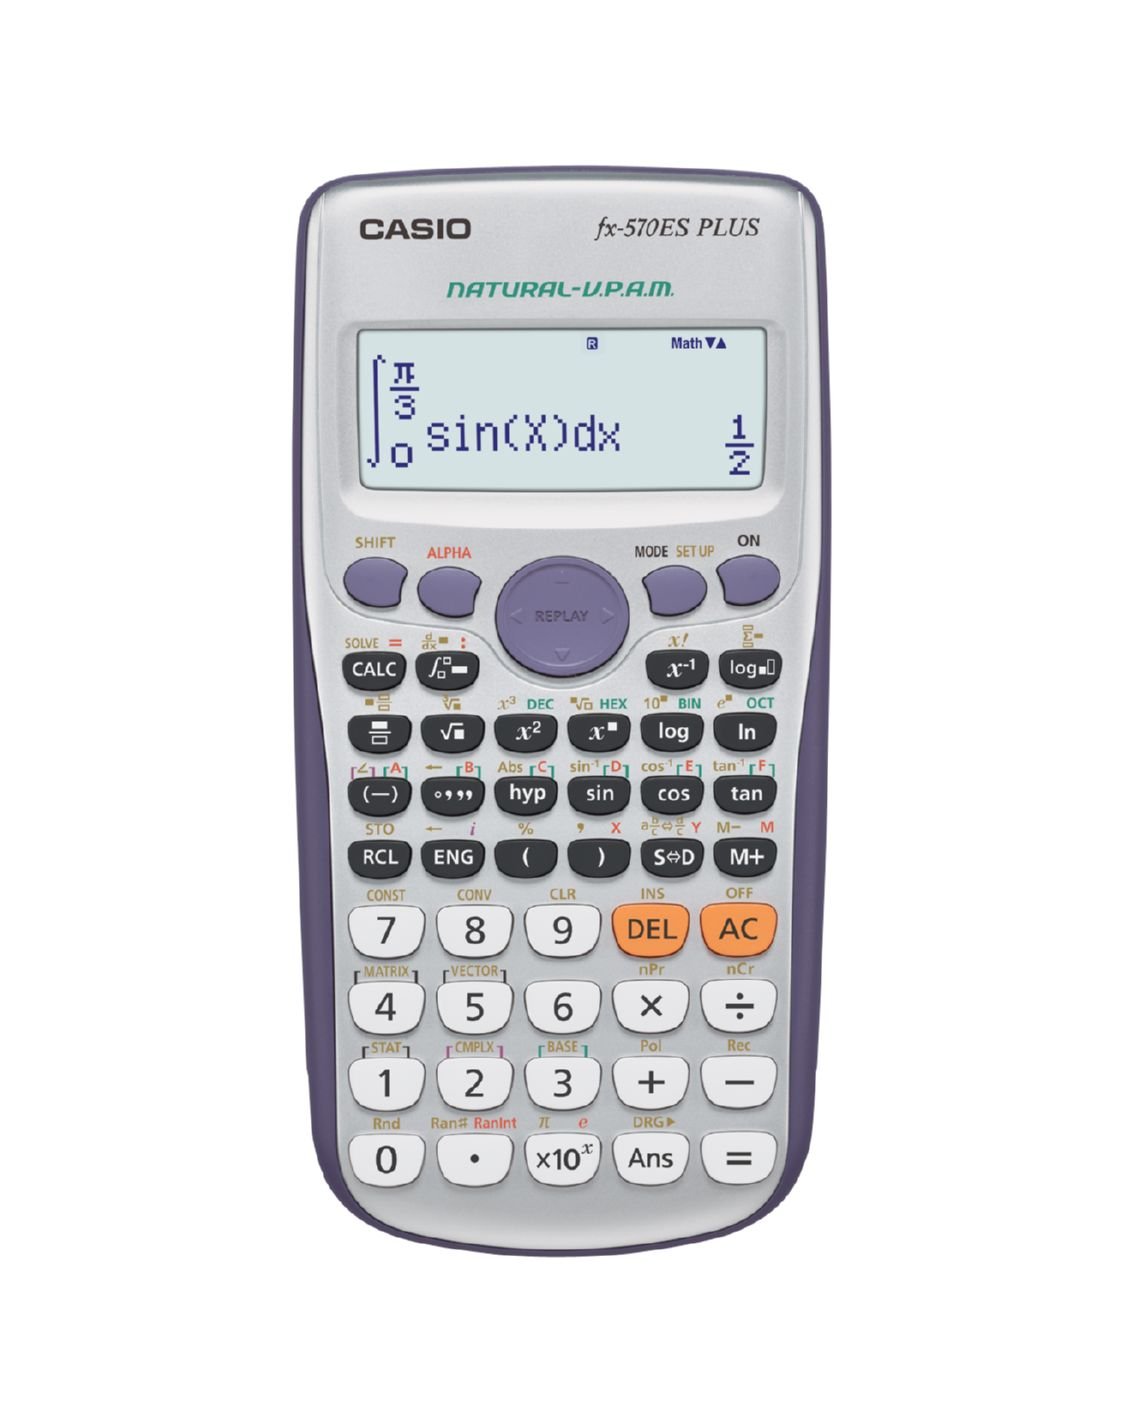 Calcolatrice scientifica Casio FX-570ES PLUS con 417 funzioni. Ammessa alla Maturità - FX-570ESPLUS-2WETV 4971850182252